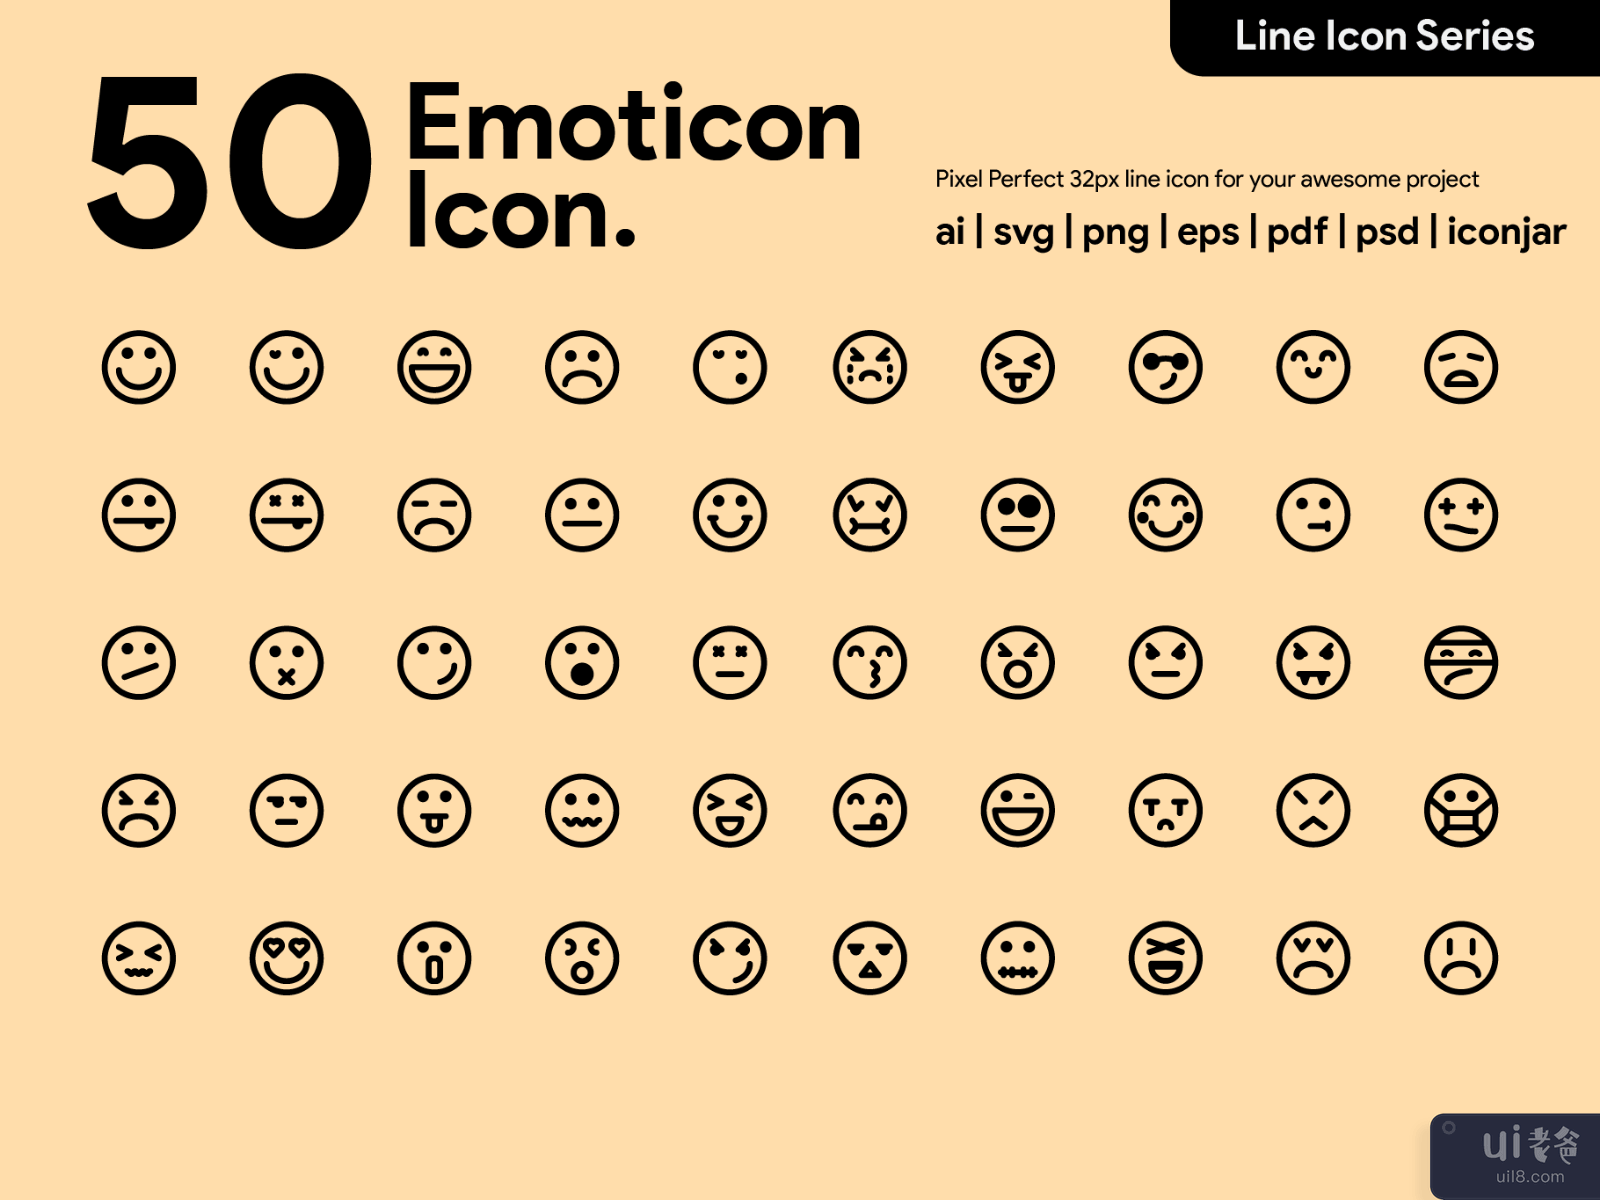 Kawaicon - 50 Emoticon  Line Icon